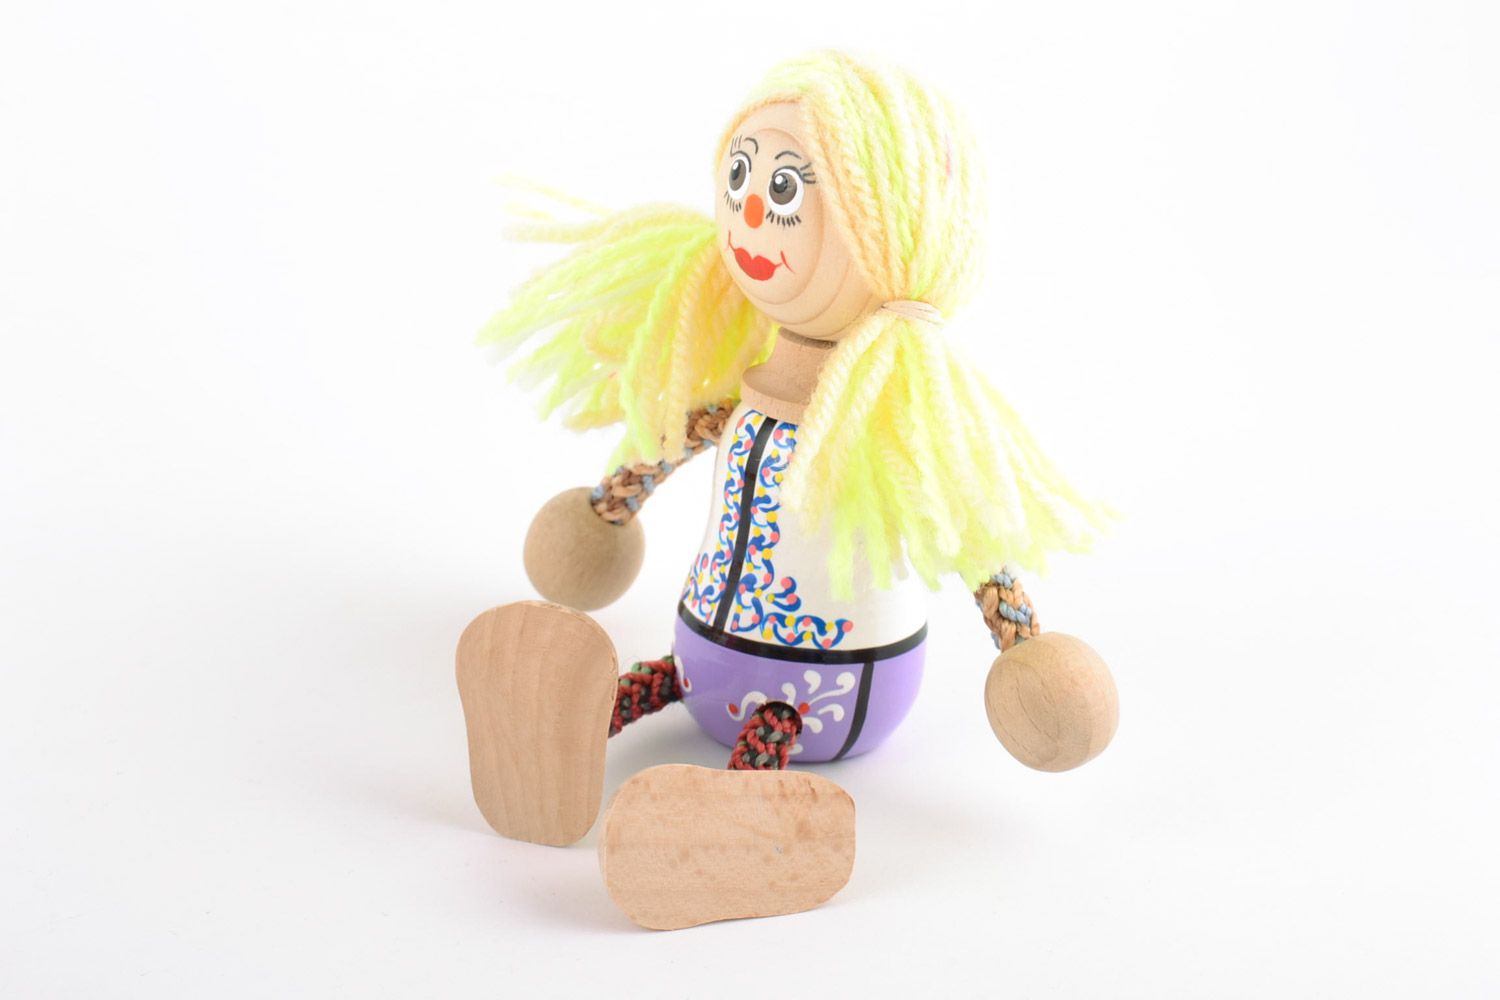 Jouet en bois écologique fait main avec ressort peint bonhomme figurine photo 4